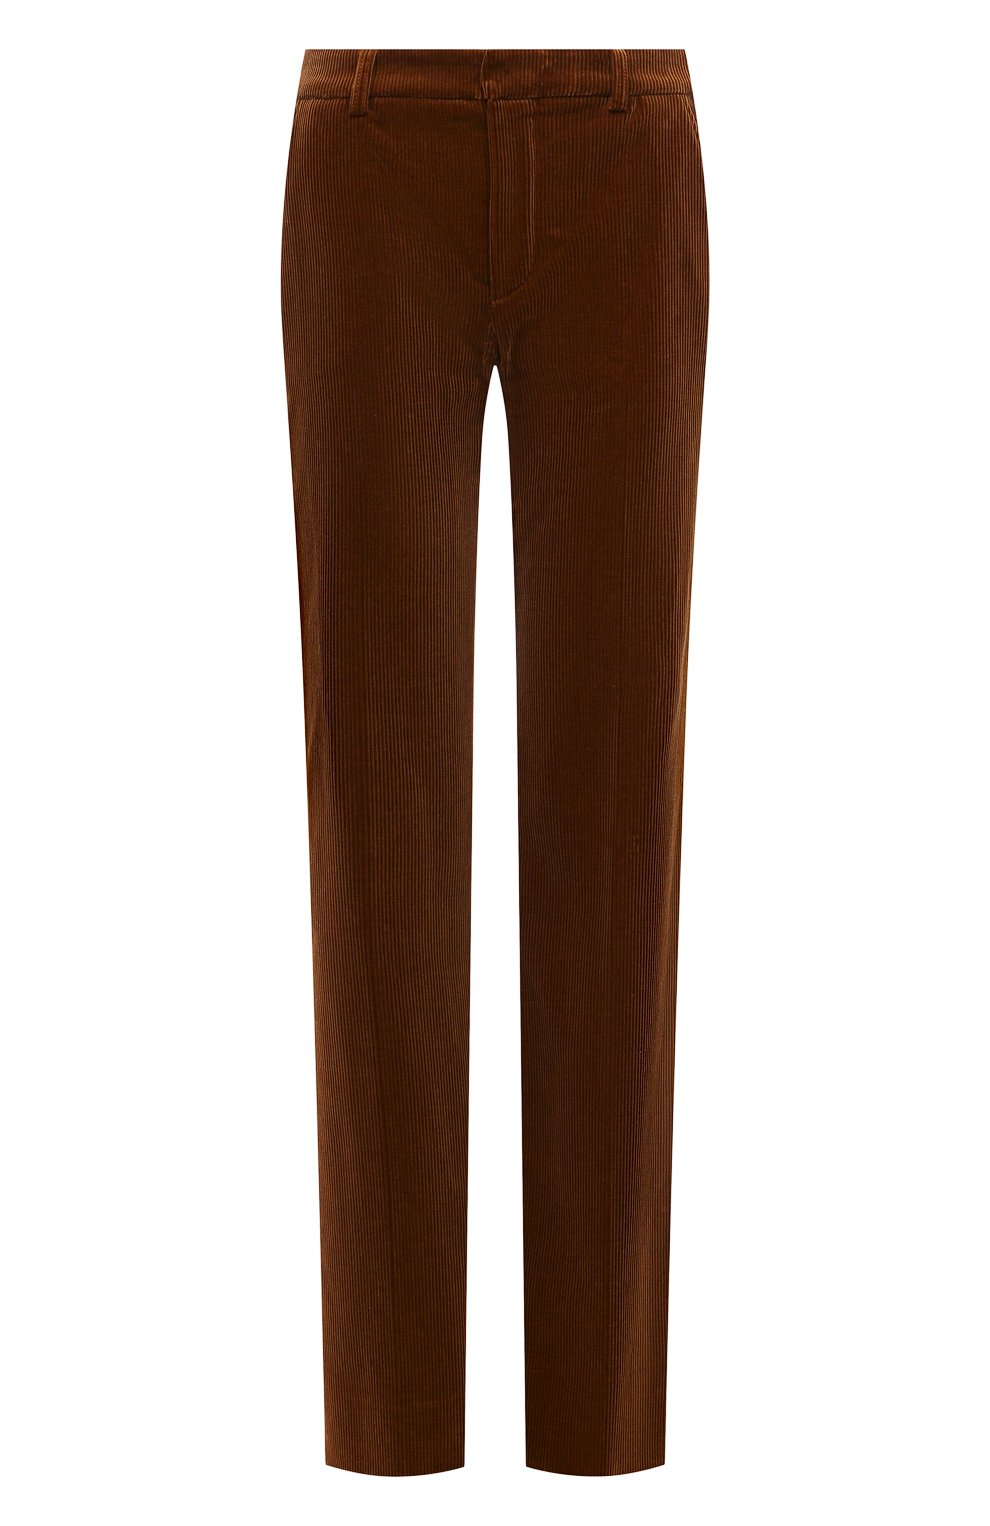 Вельветовые брюки Saint Laurent коричневого цвета